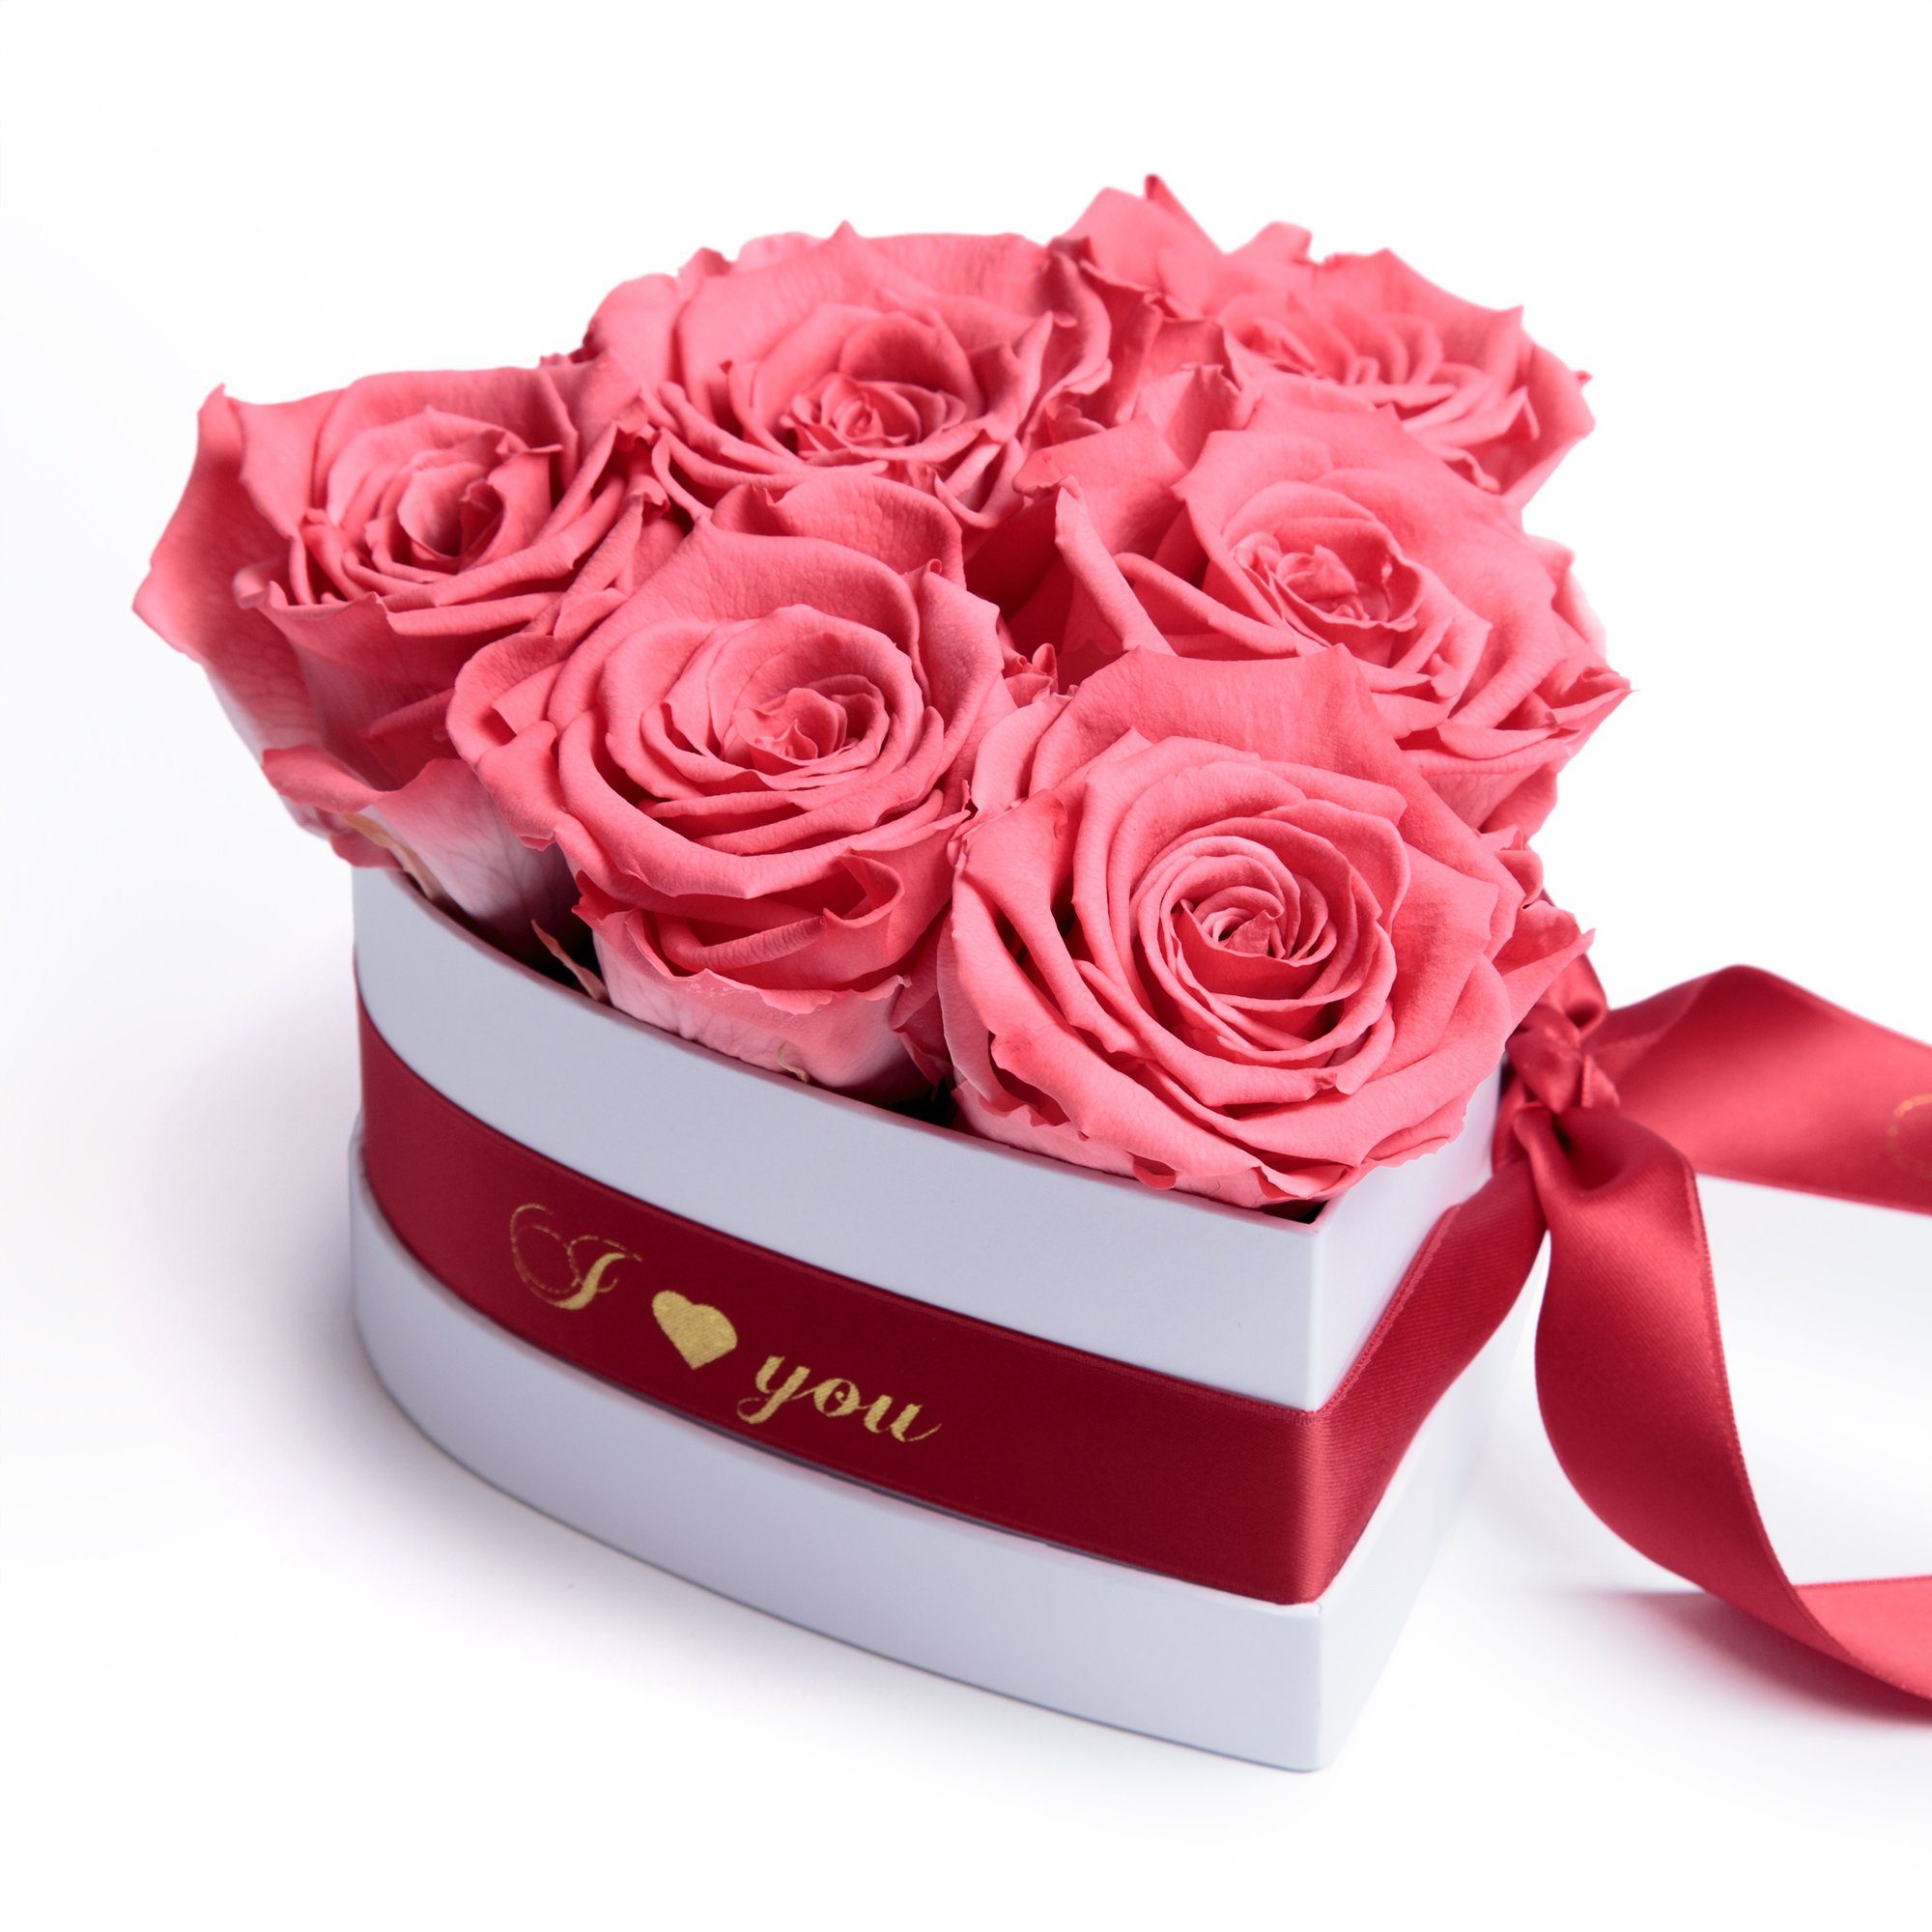 Kunstblume Infinity Rosenbox Herz 6 ewige Rosen I Love You Geschenk für Frauen Rose, ROSEMARIE SCHULZ Heidelberg, Höhe 10 cm, Valentinstag Geschenk für Frau Korall